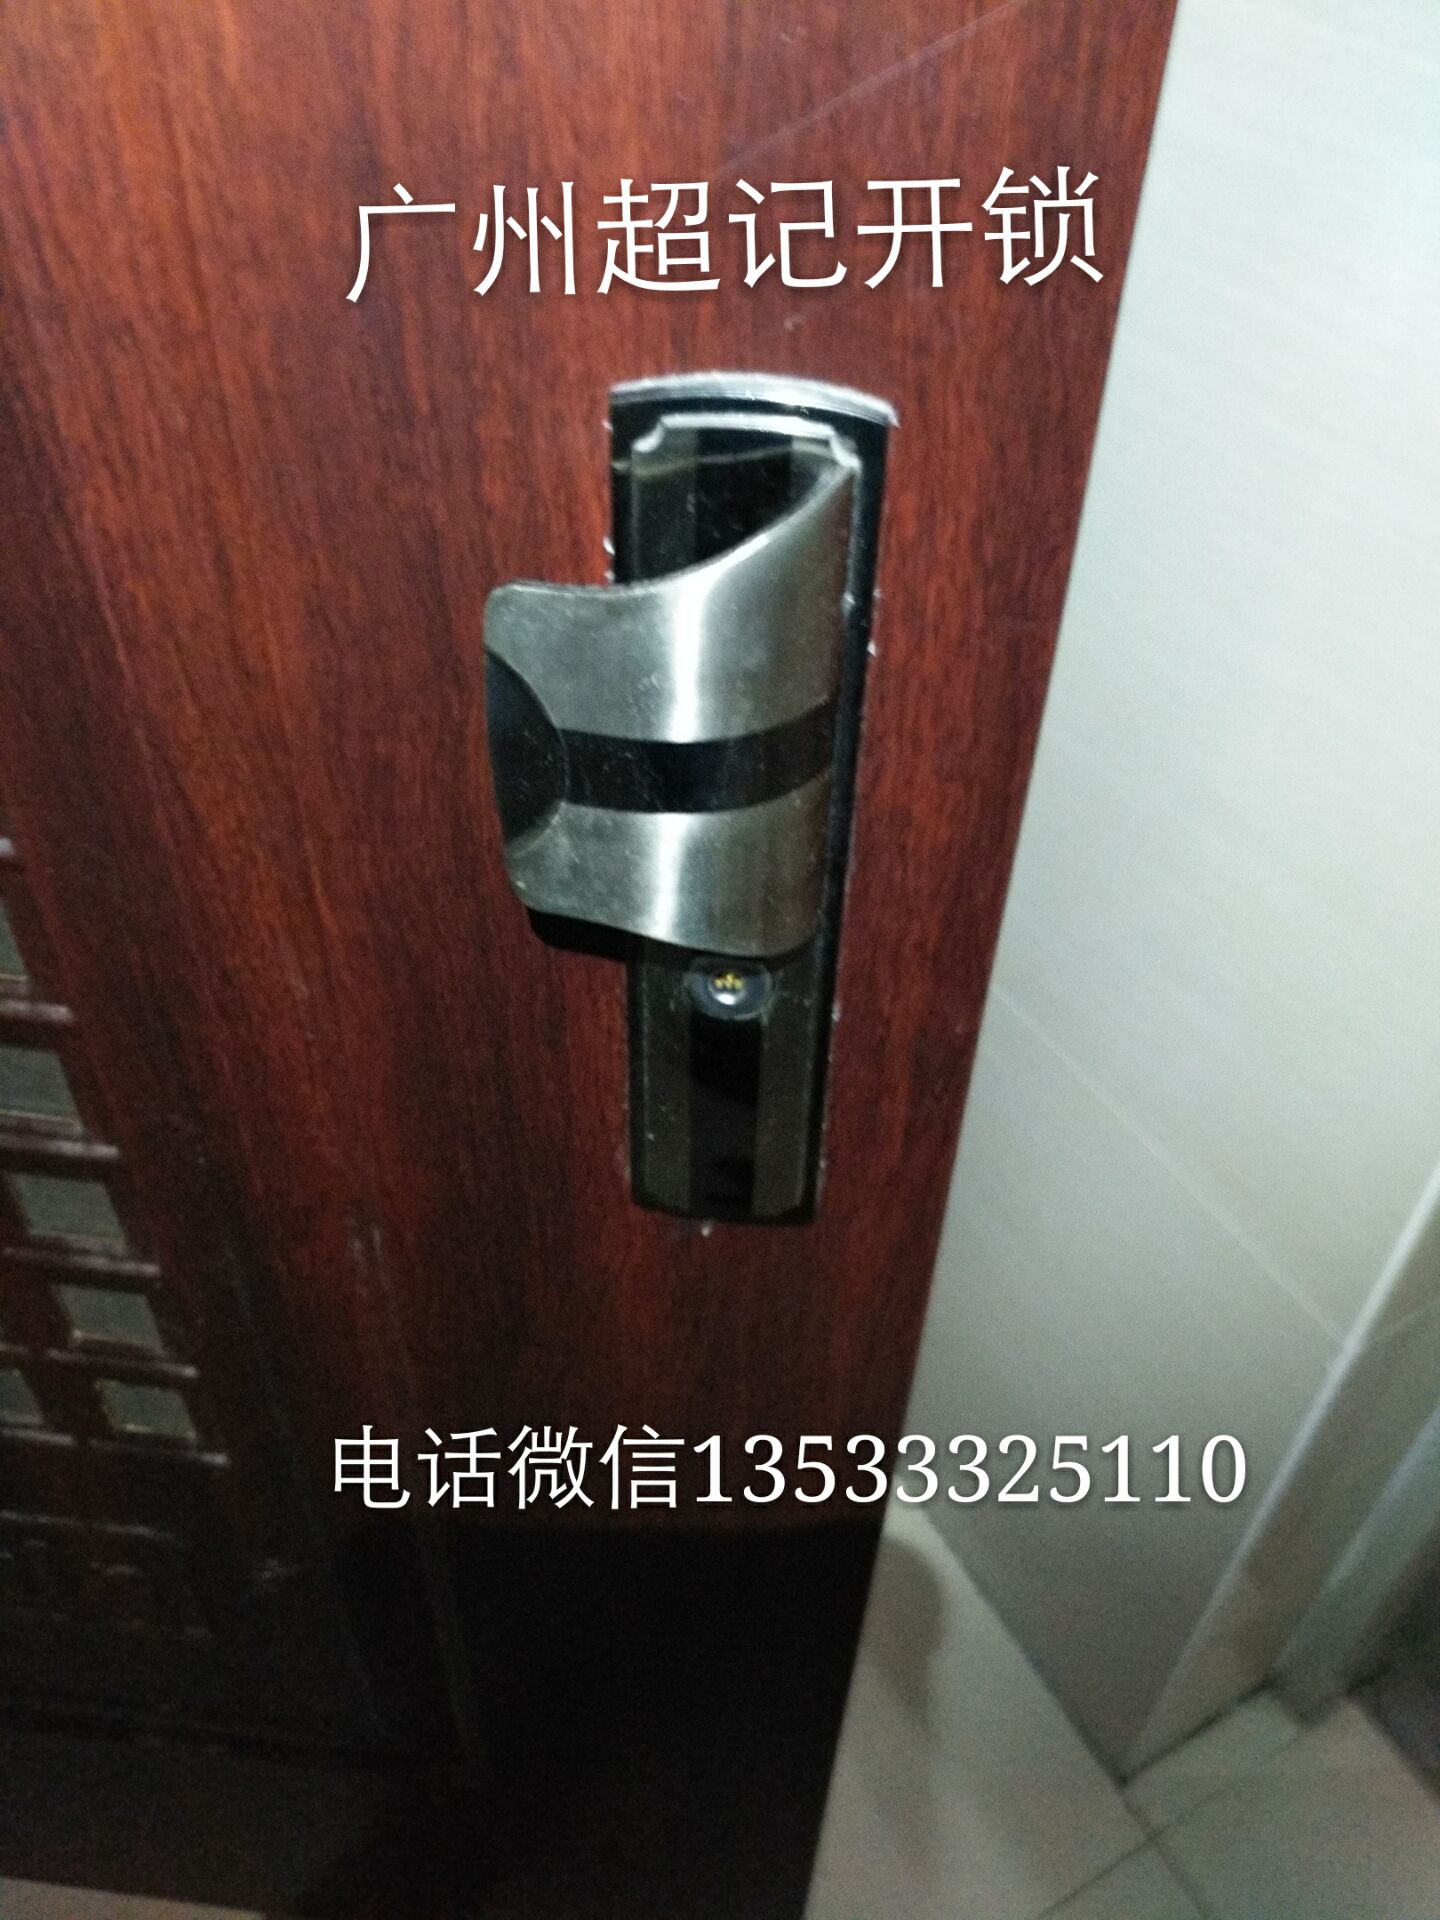 广州海珠区配钥匙